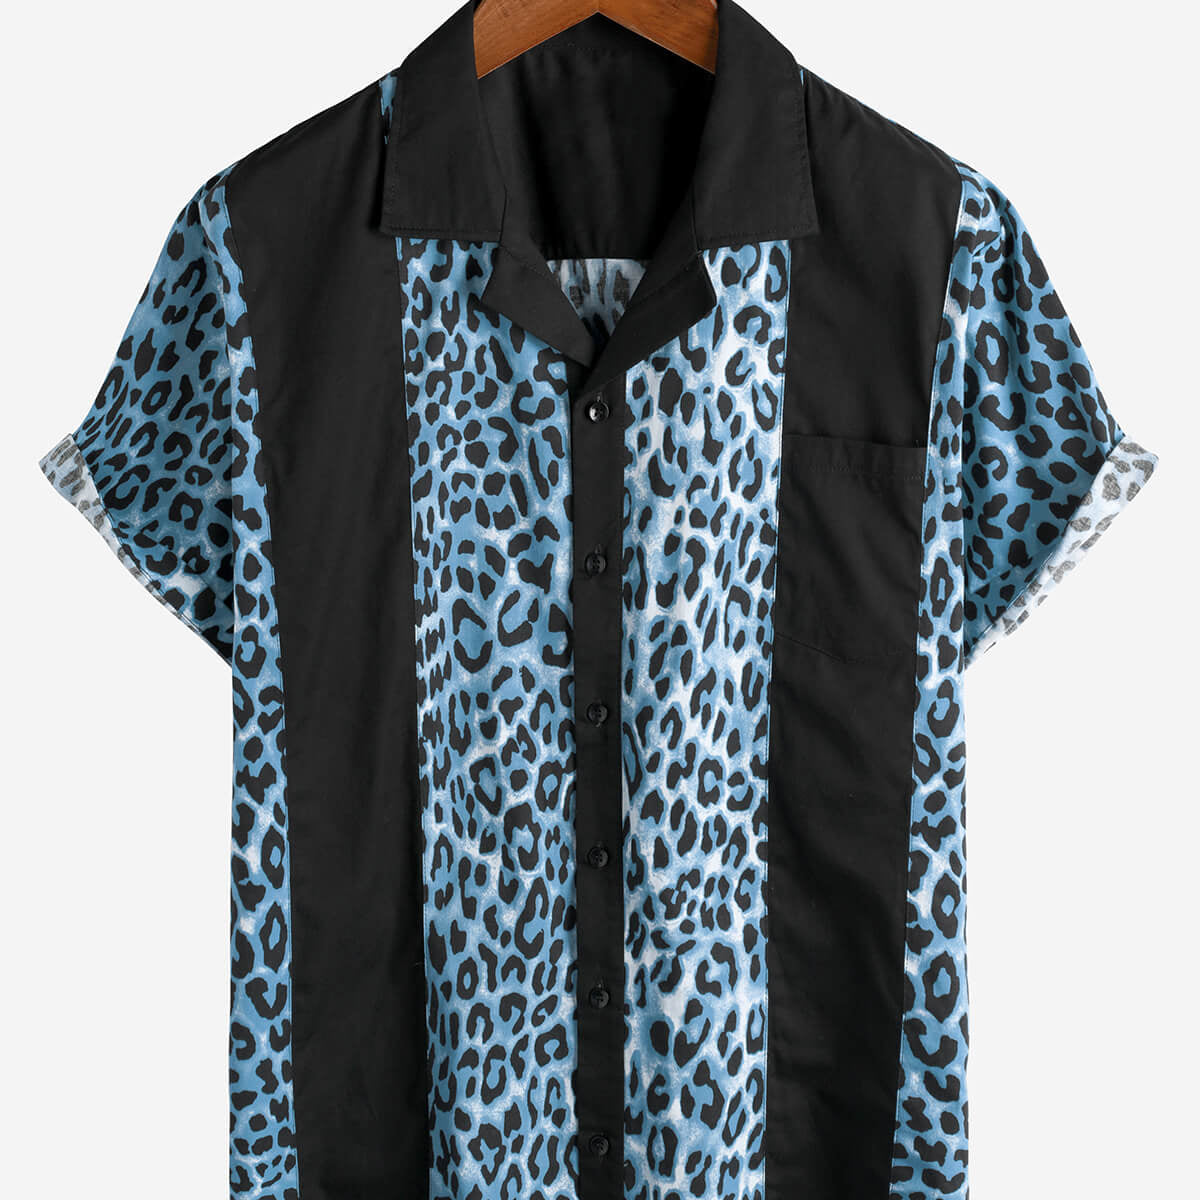 Camisa hawaiana de verano de manga corta con botones y estampado de leopardo para hombre